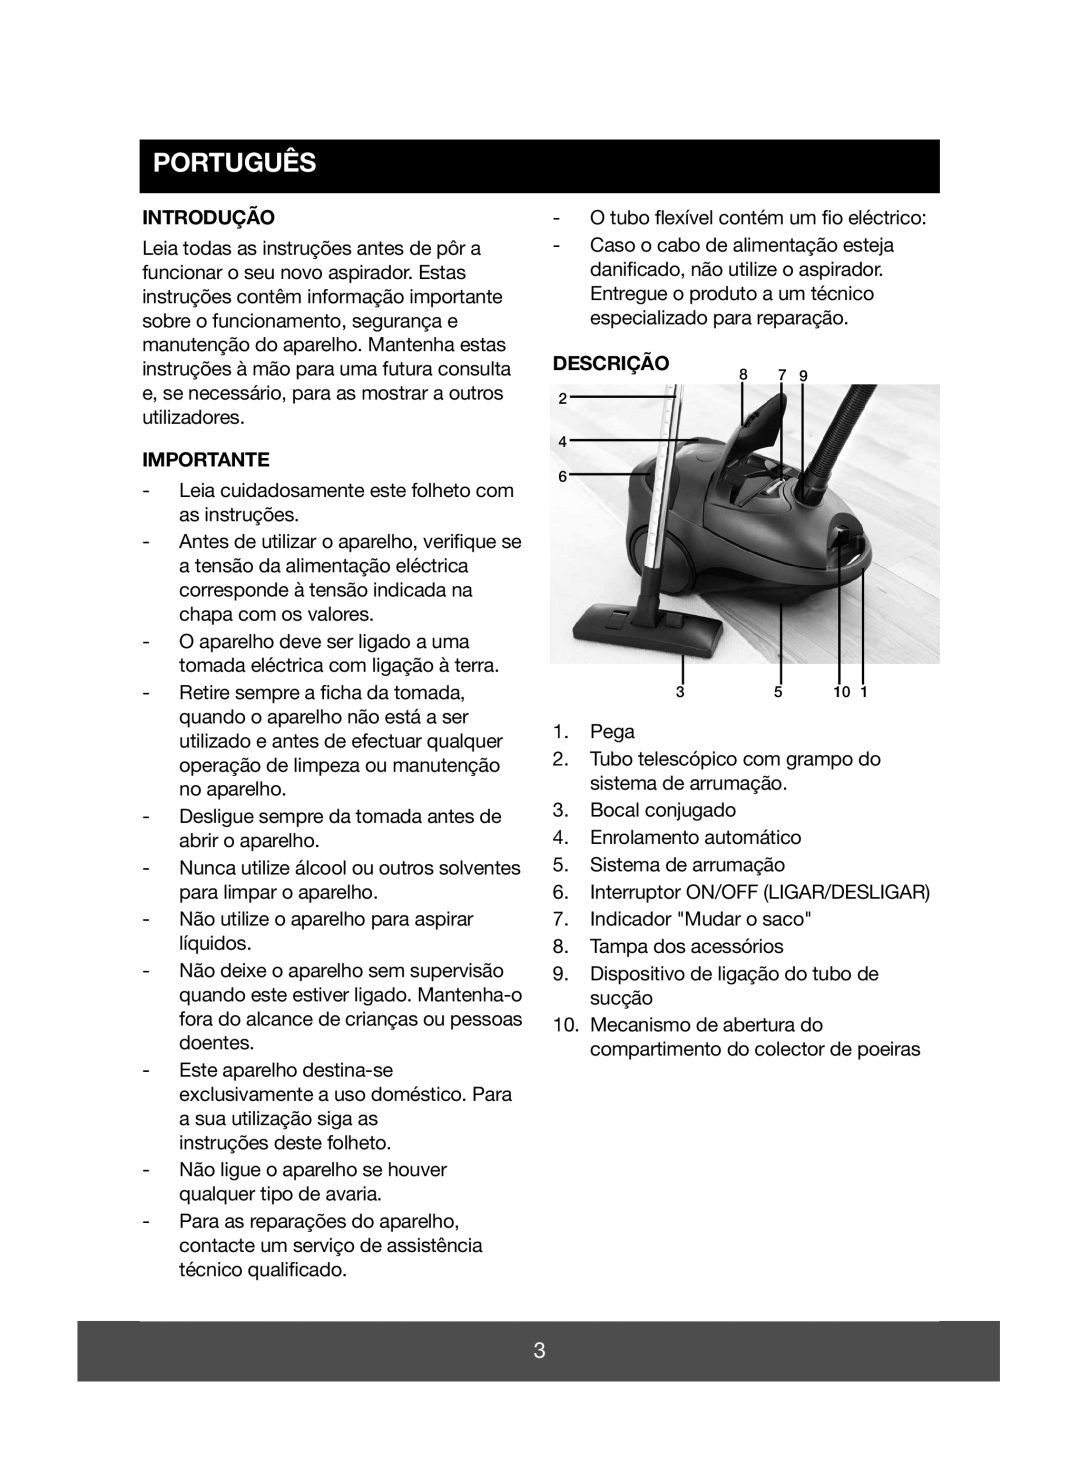 Electric-Spin 640090 manual Português, Introdução, Importante, Descrição 